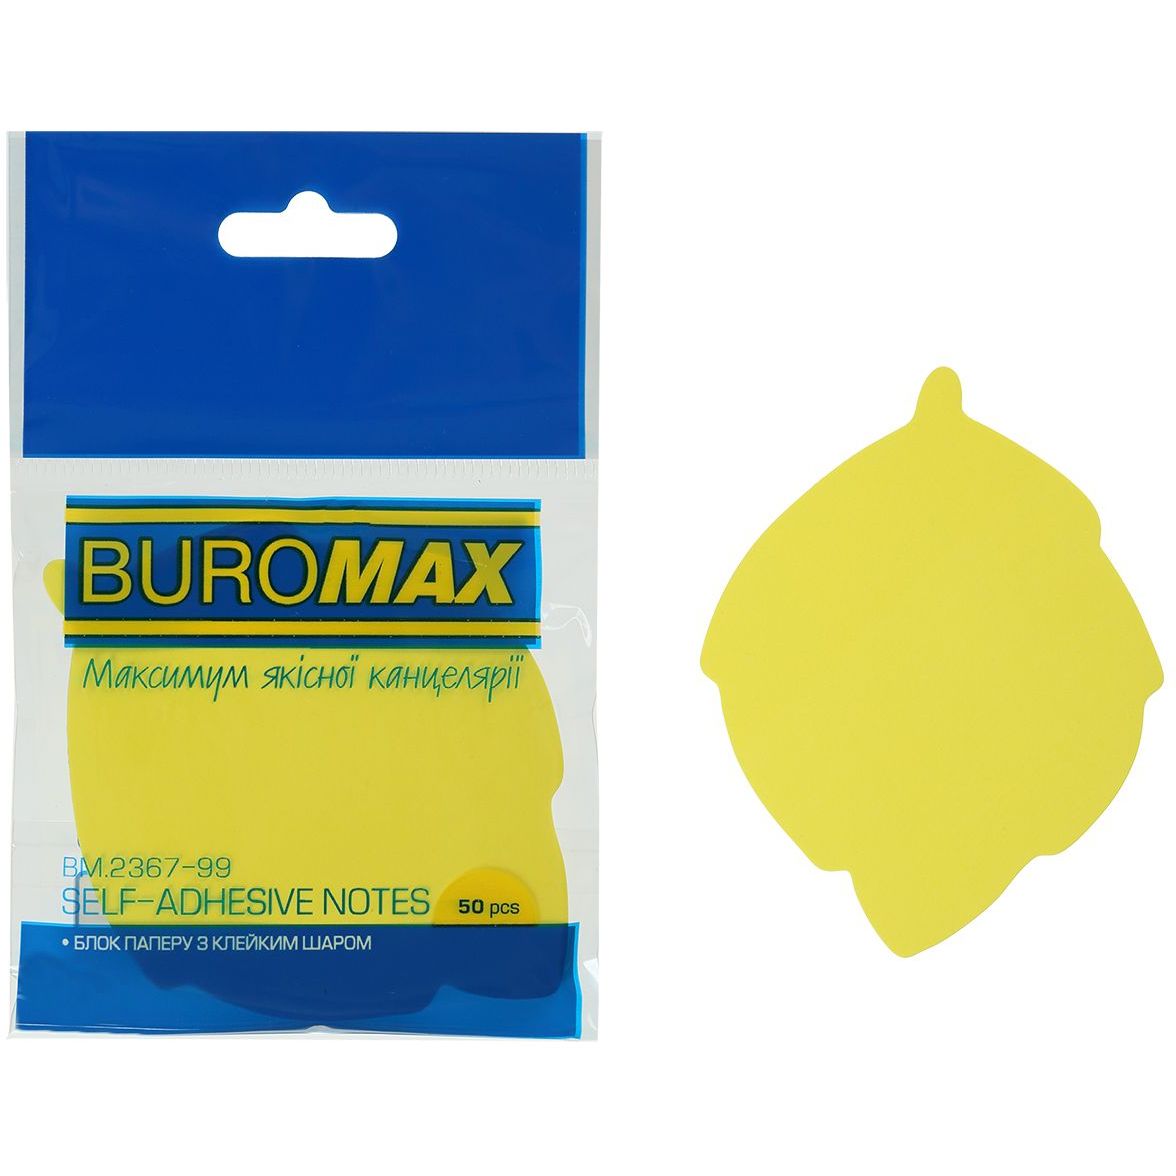 Блок бумаги для заметок Buromax Neon Лист с клейким слоем 50 листов в ассортименте (BM.2367-99) - фото 2